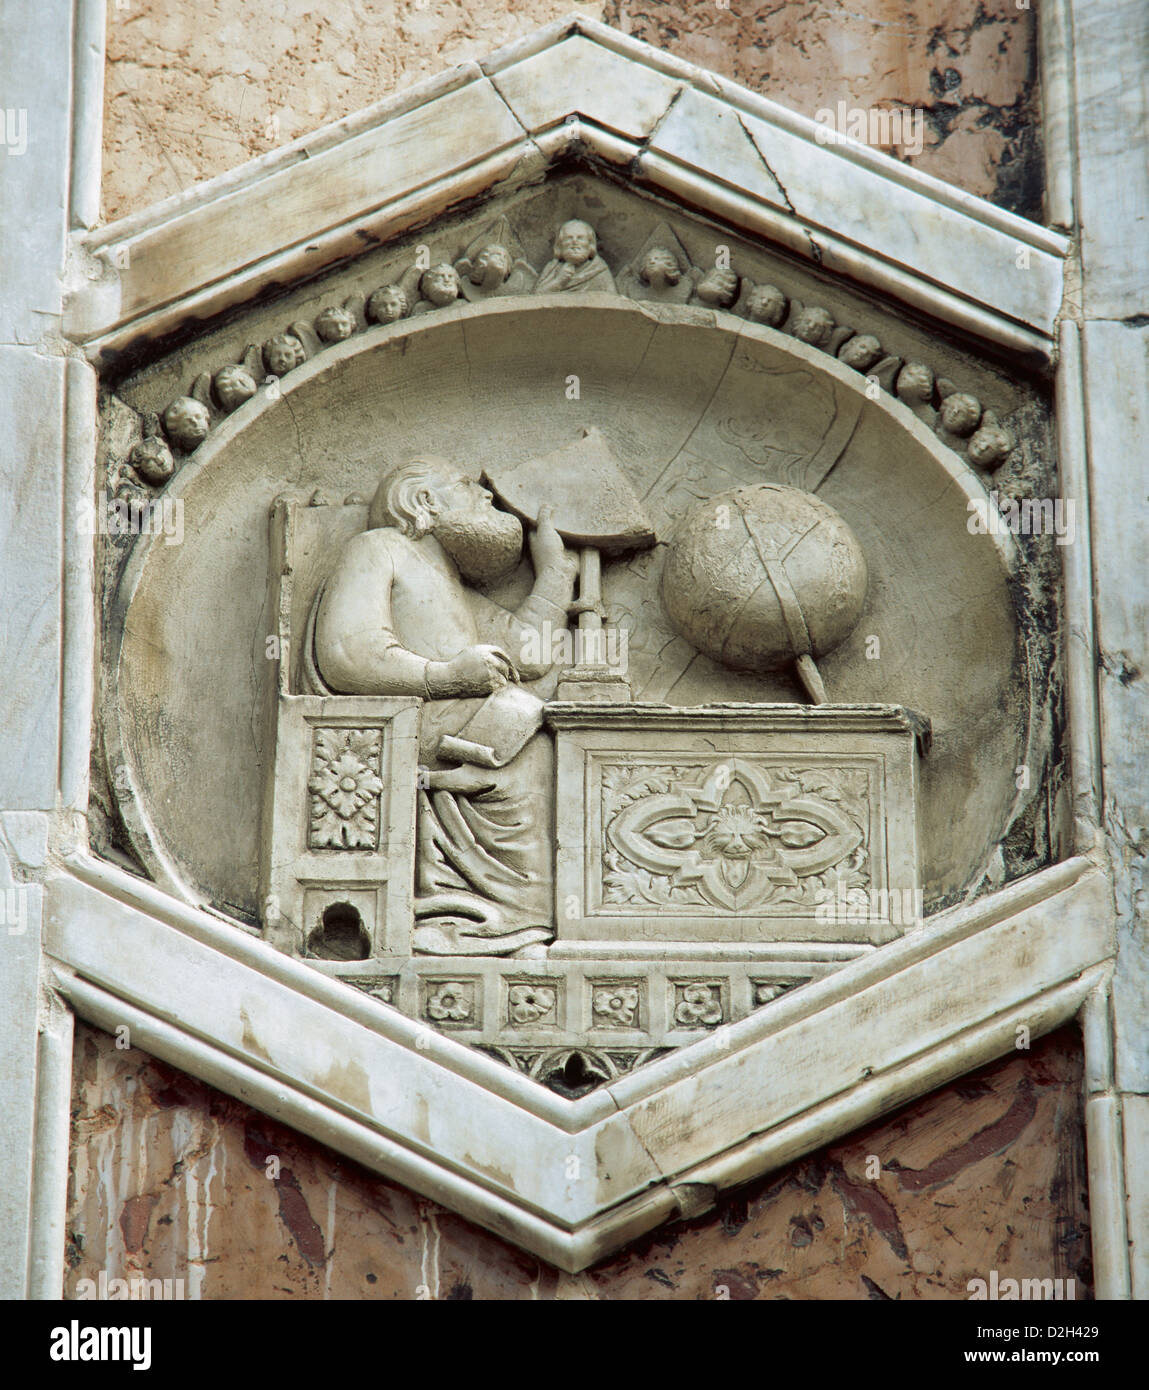 Gionitus. Inventor de la Astronomía, (1334-1336). Alivio en el exagonal paneles del campanile de la Catedral de Florencia. Italia. Foto de stock